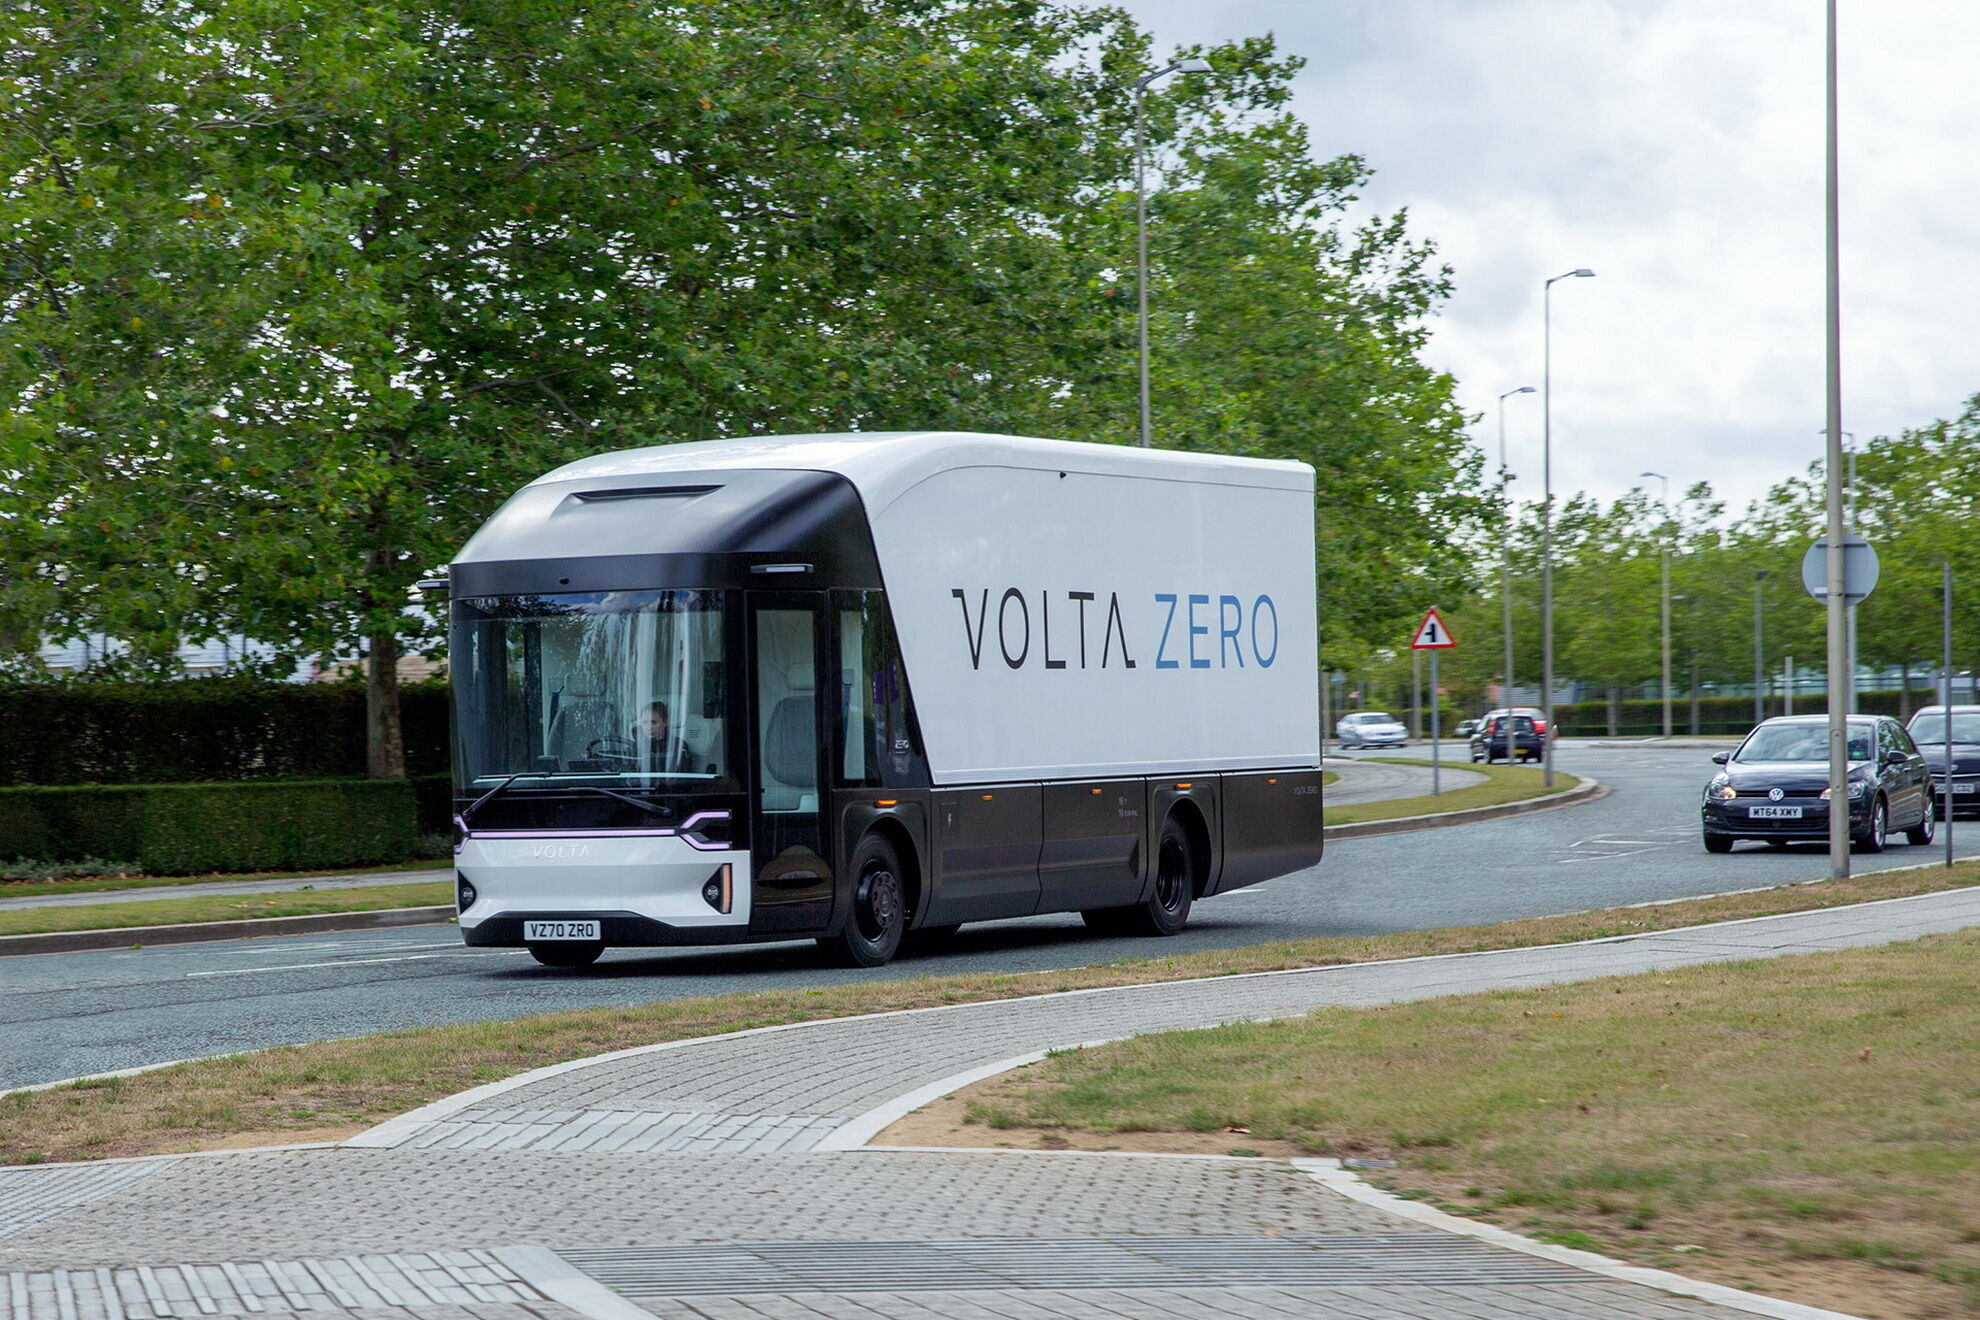 Первые прототипы Volta Zero будут изготовлены в будущем году, а серийное производство планируется начать в 2022 году